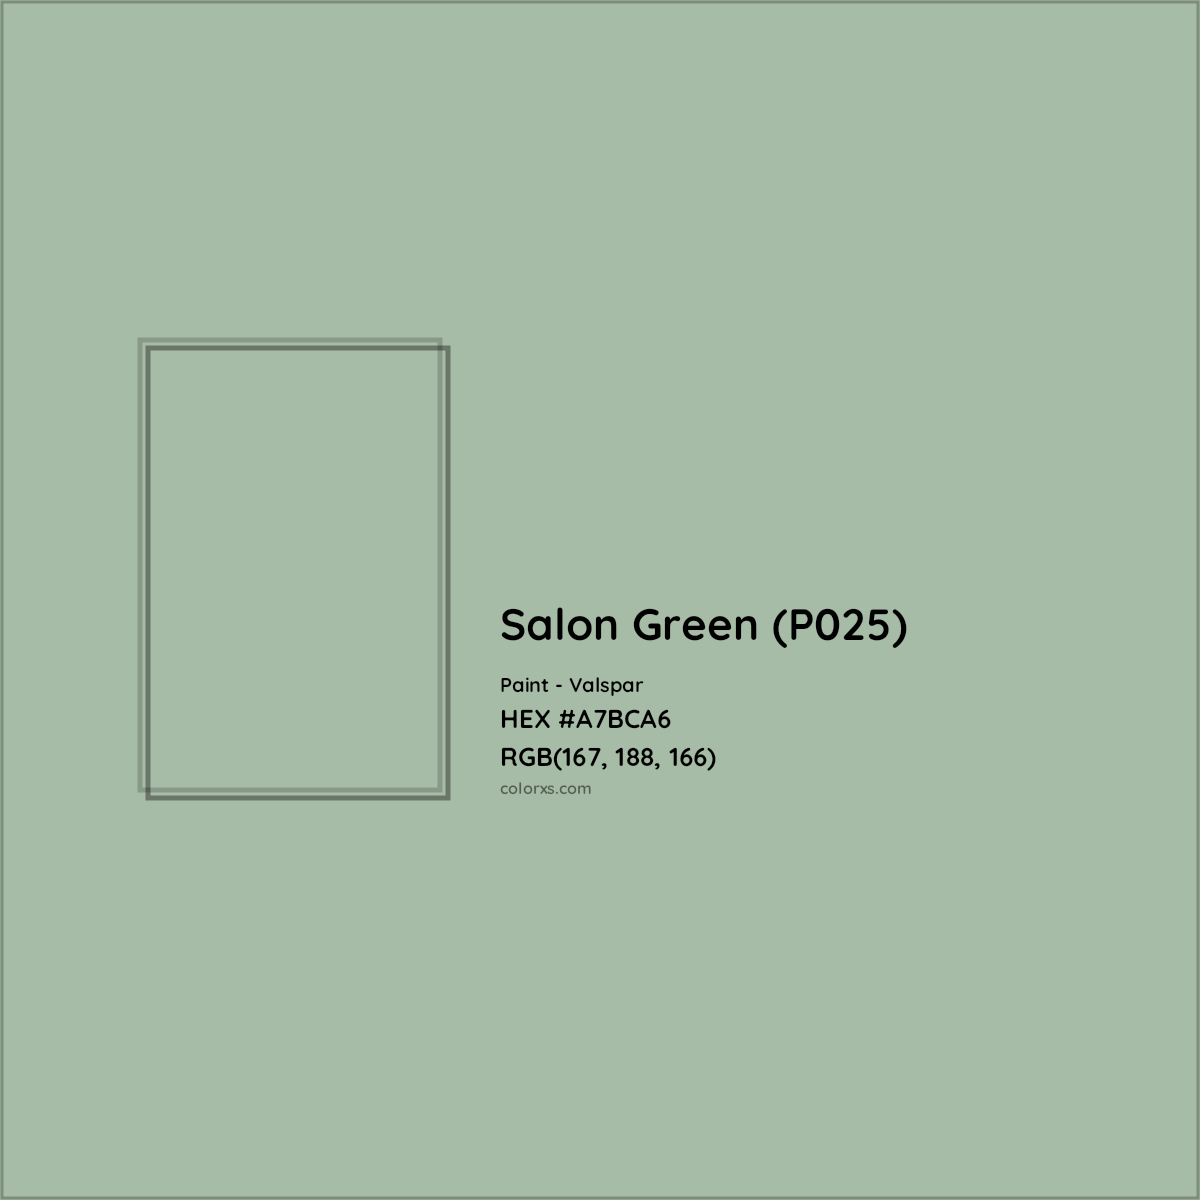 HEX #A7BCA6 Salon Green (P025) Paint Valspar - Color Code